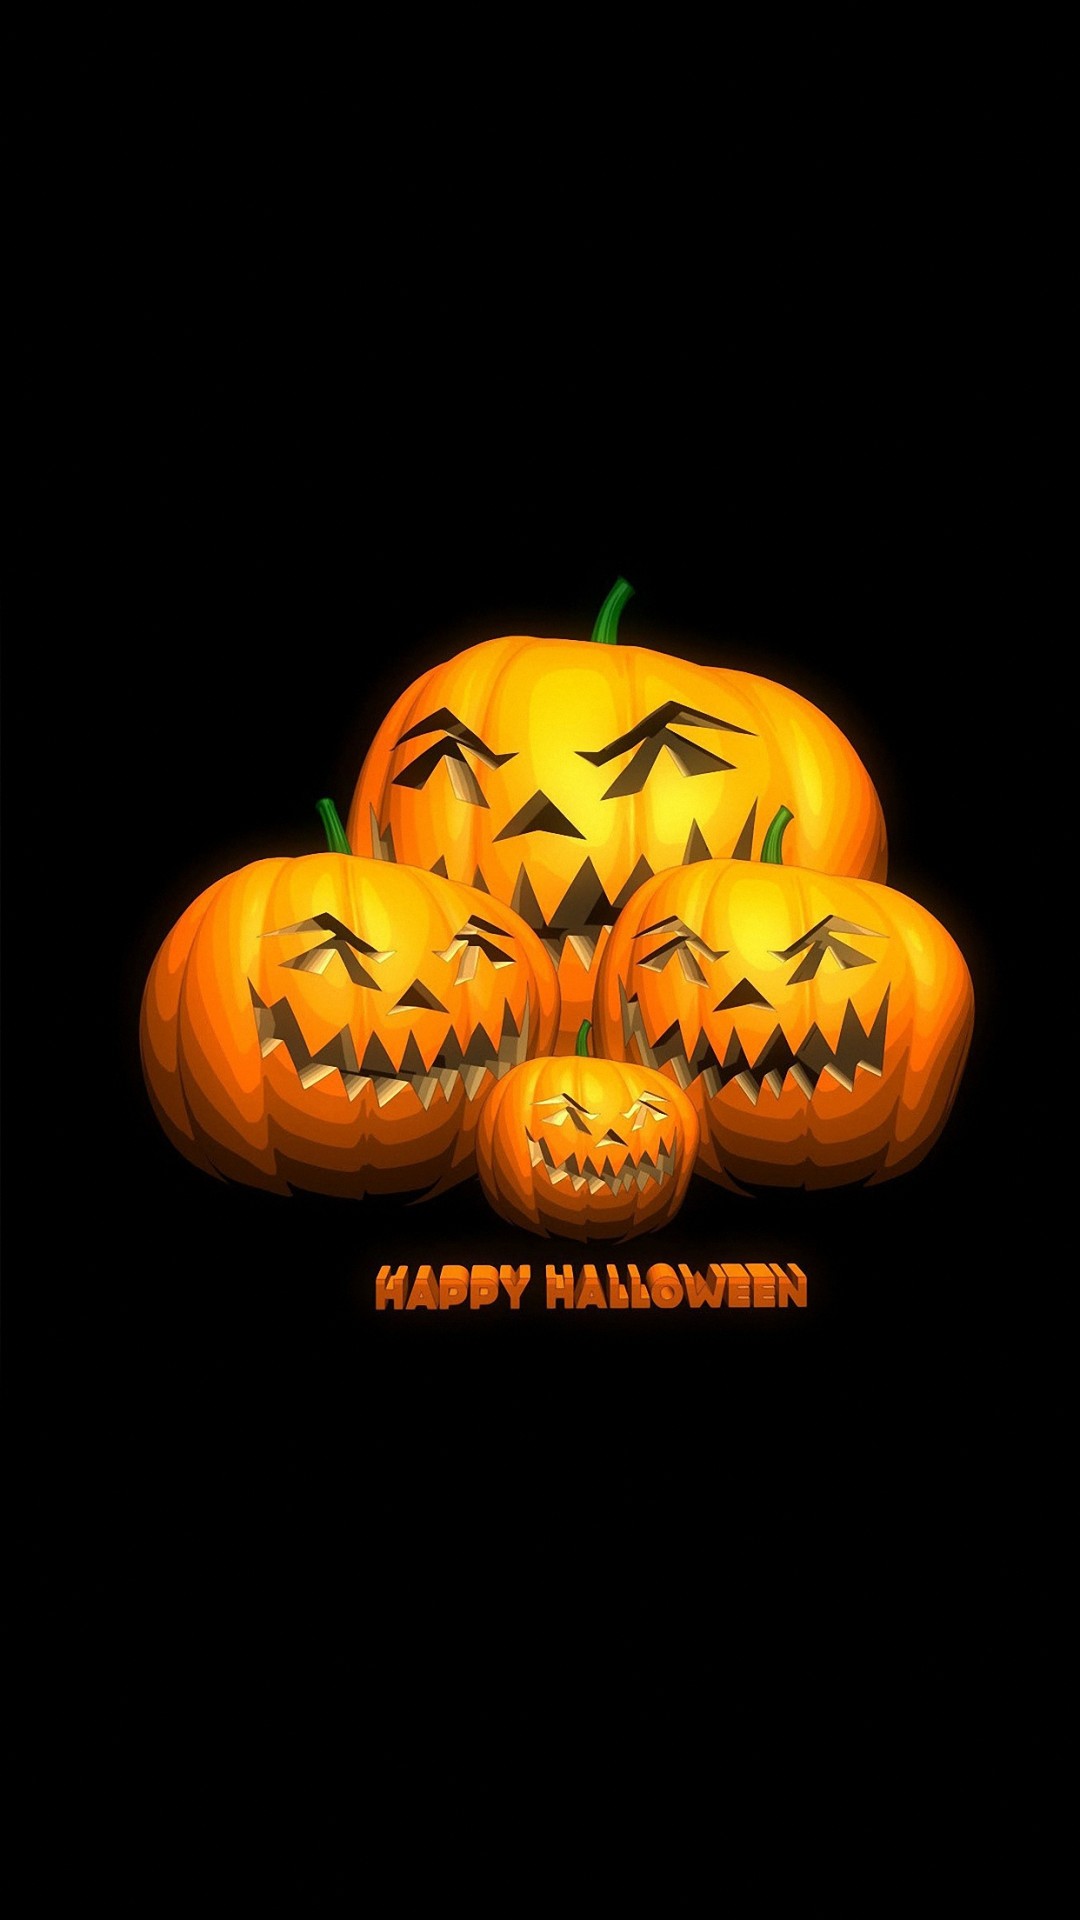 1080x1920 Halloween iPhone Wallpaper | PixelsTalk.Net. Halloween IPhone Wallpaper  PixelsTalk Net